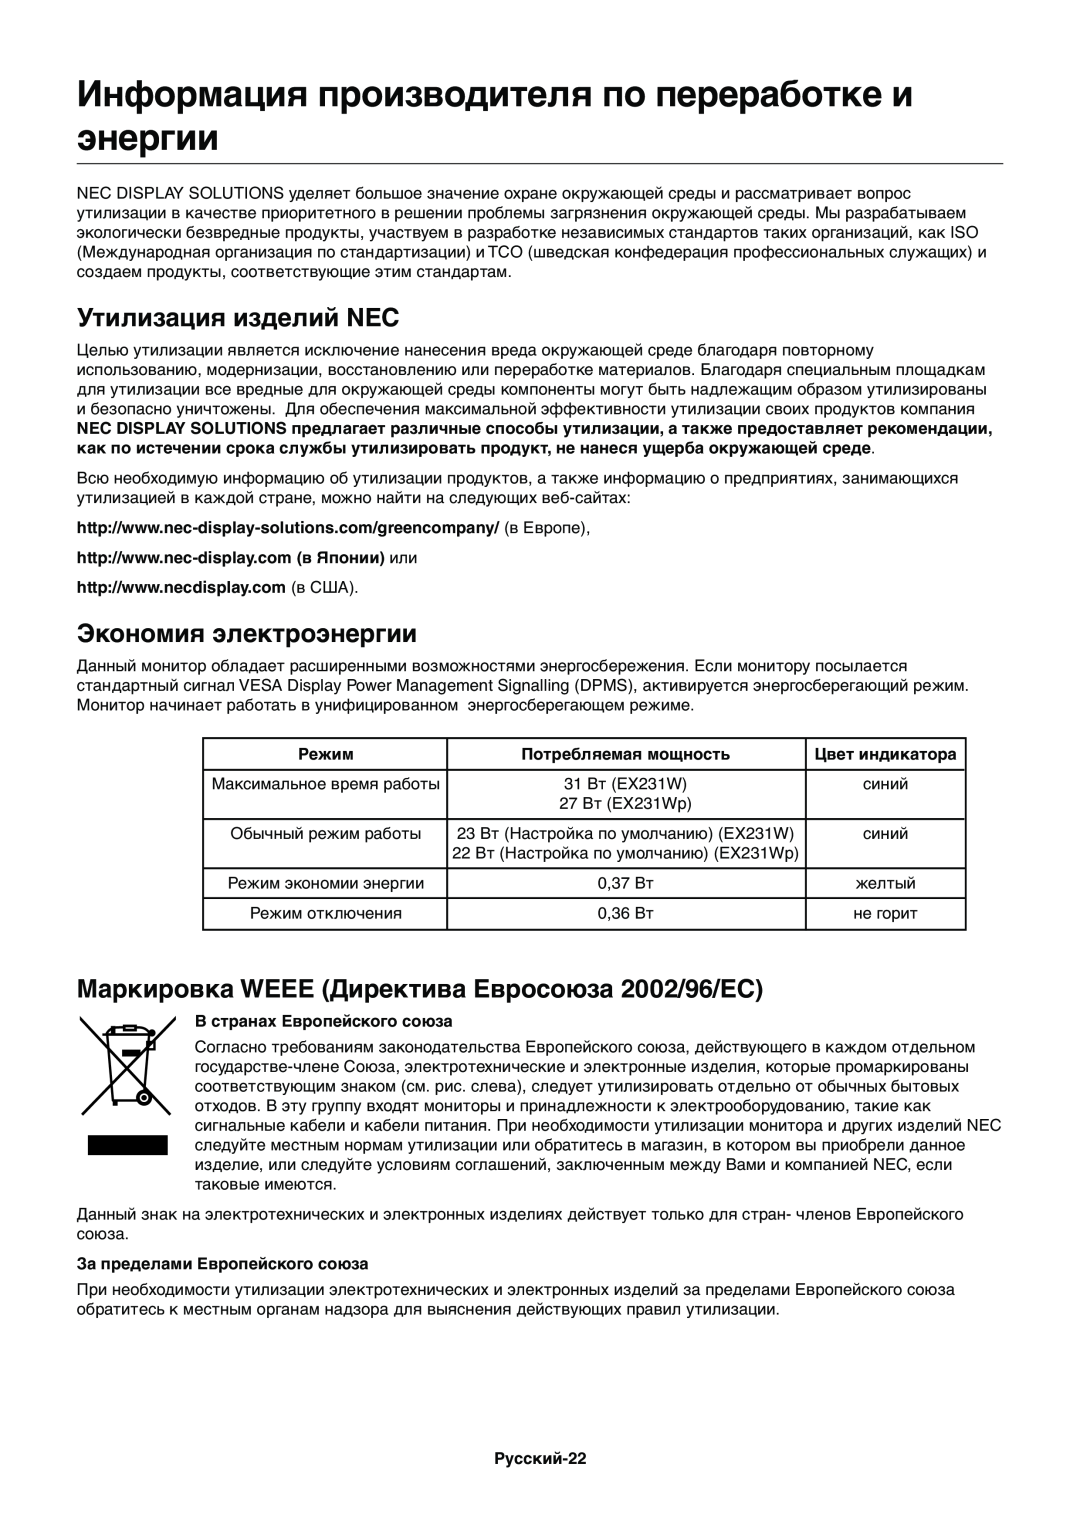 NEC EX231WP manual Информация производителя по переработке и энергии, Утилизация изделий NEC, Экономия электроэнергии 